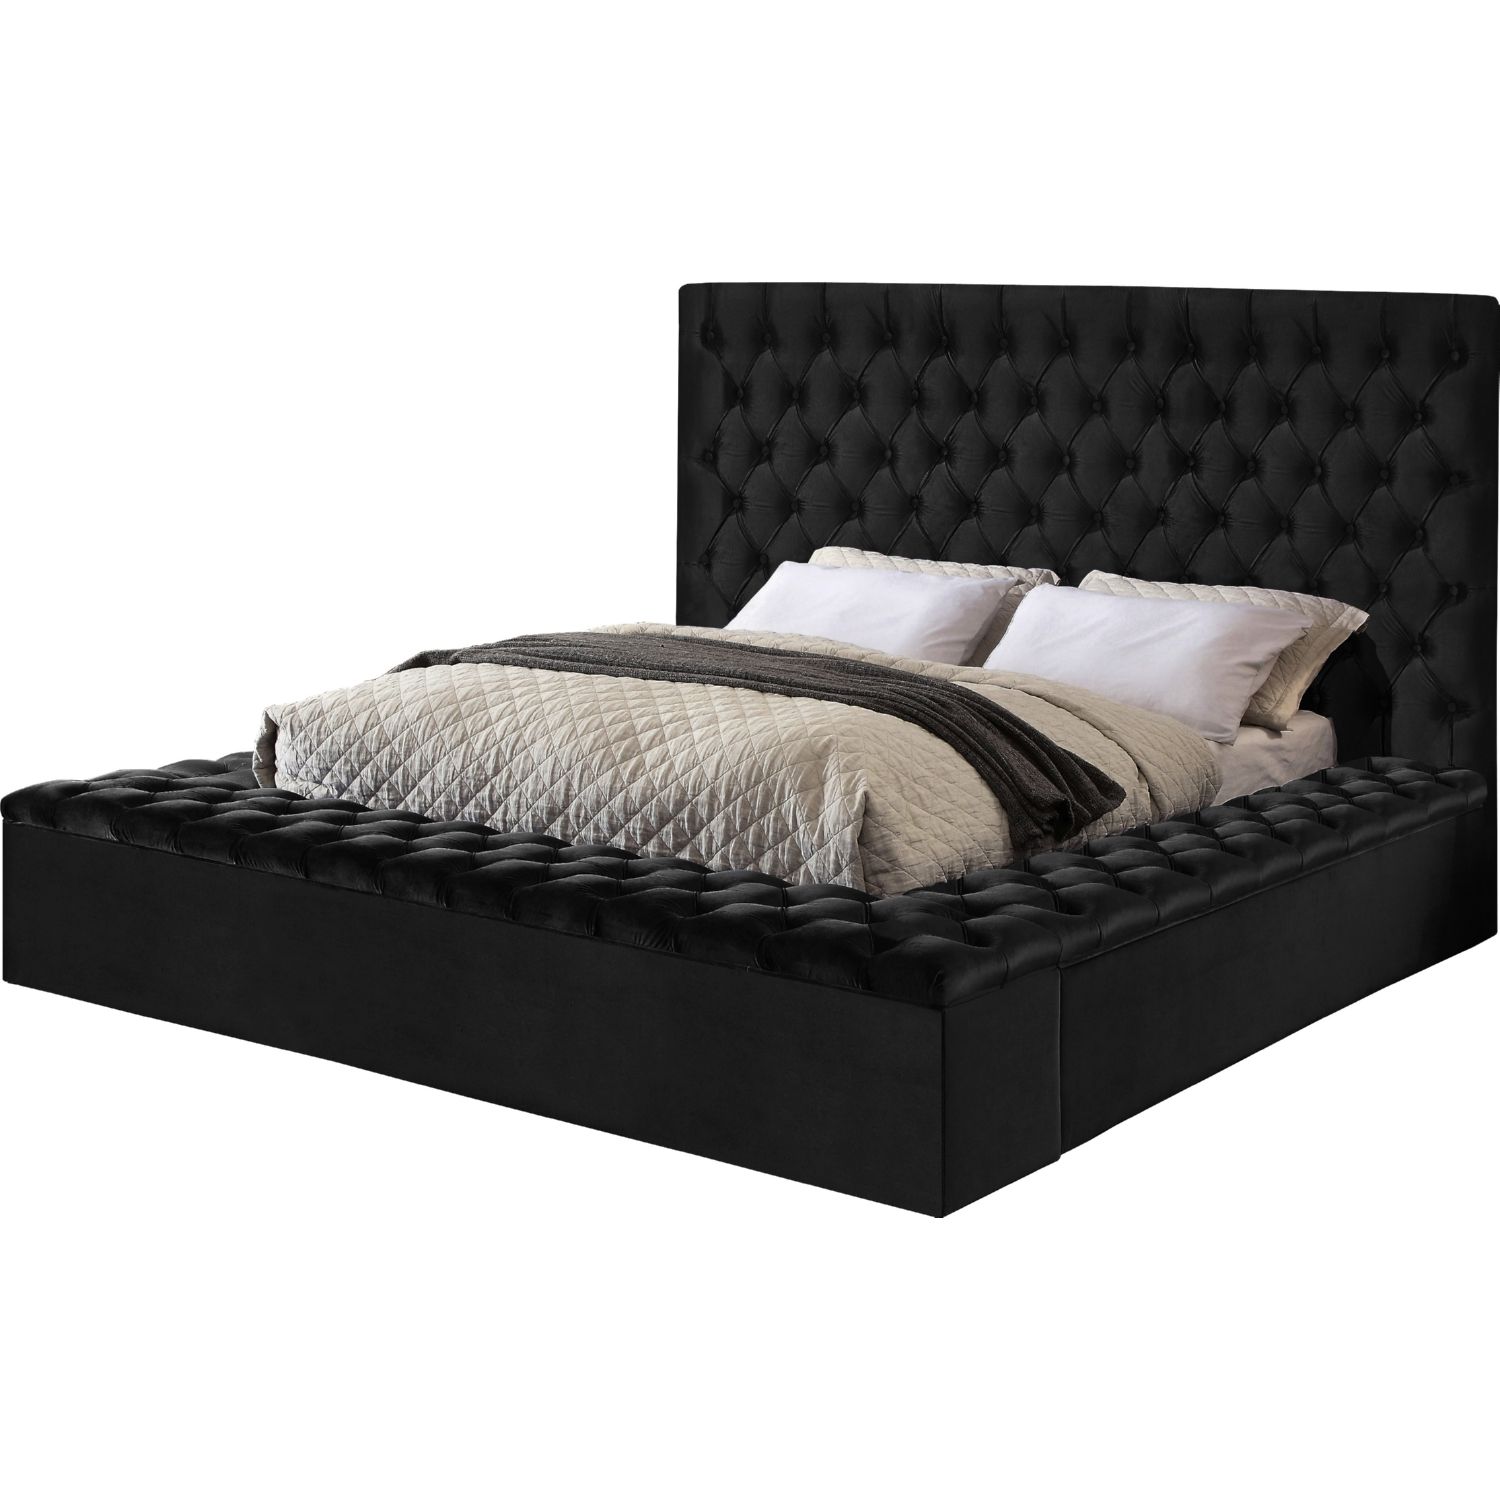 Bed frame design - Tufted Upholstered Storage Bed-2